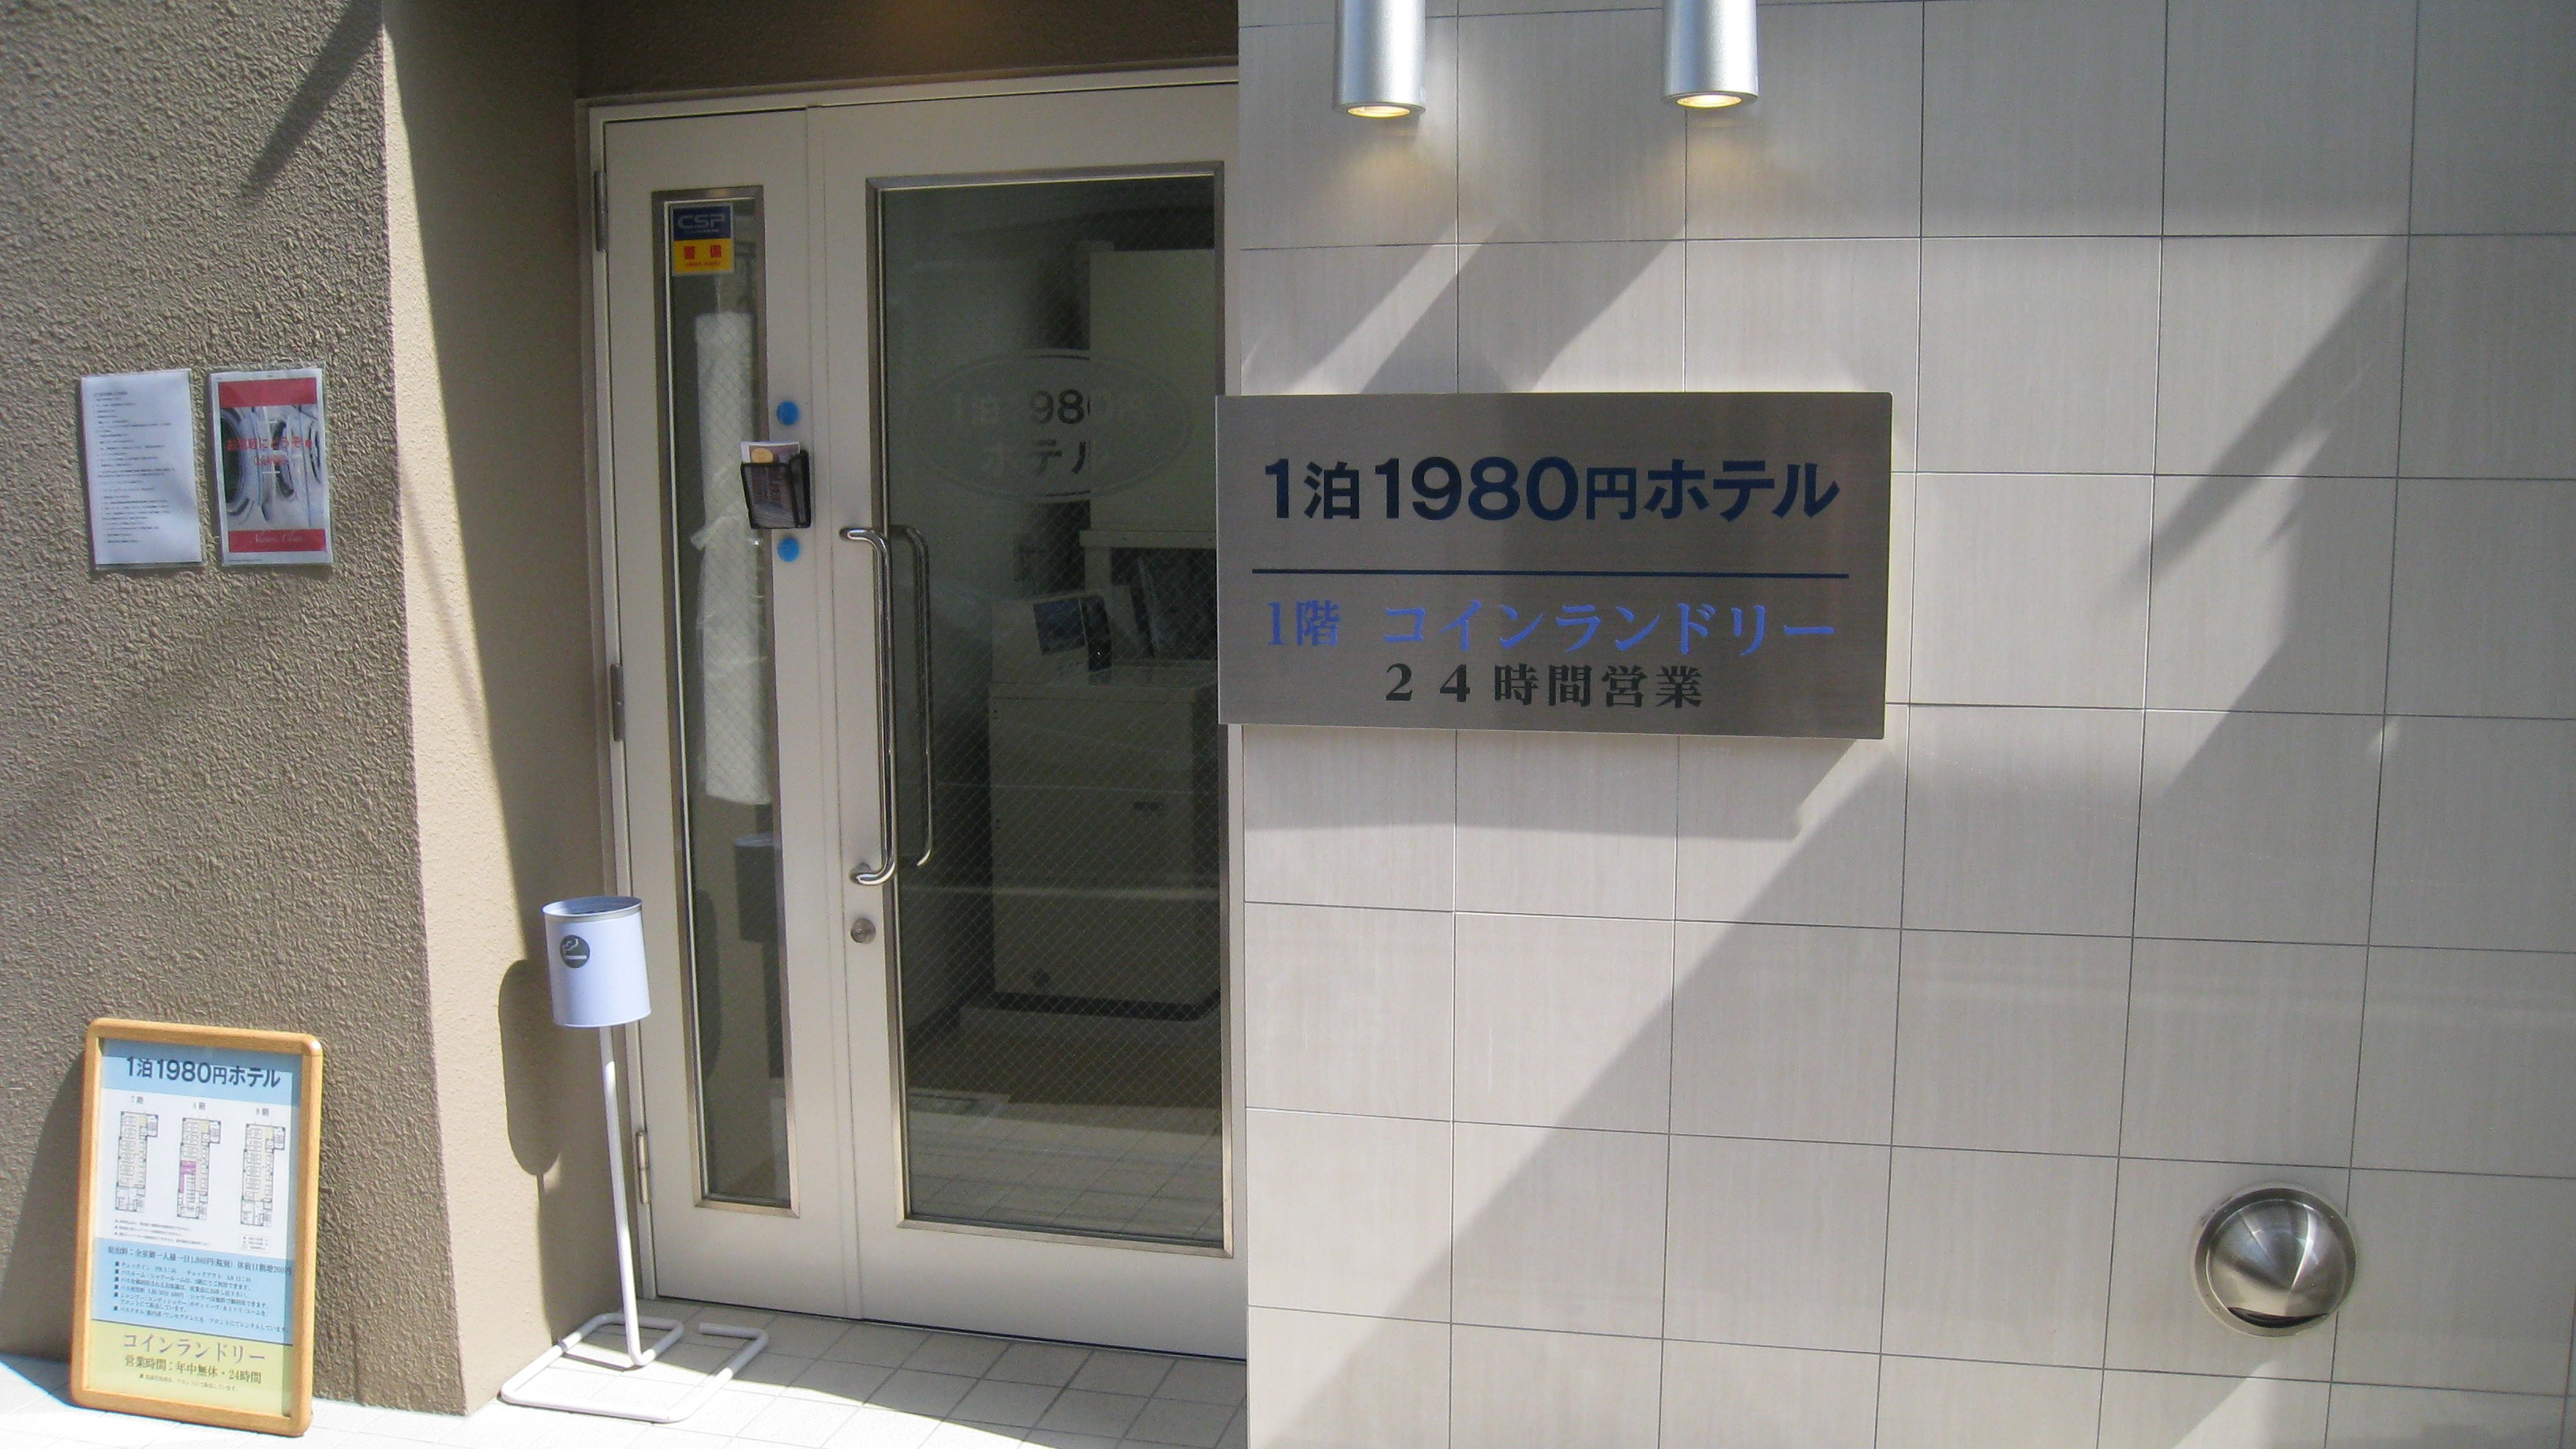 【1泊2,000円台で泊まりたい】東京都内でとにかく格安で泊まれるホテル